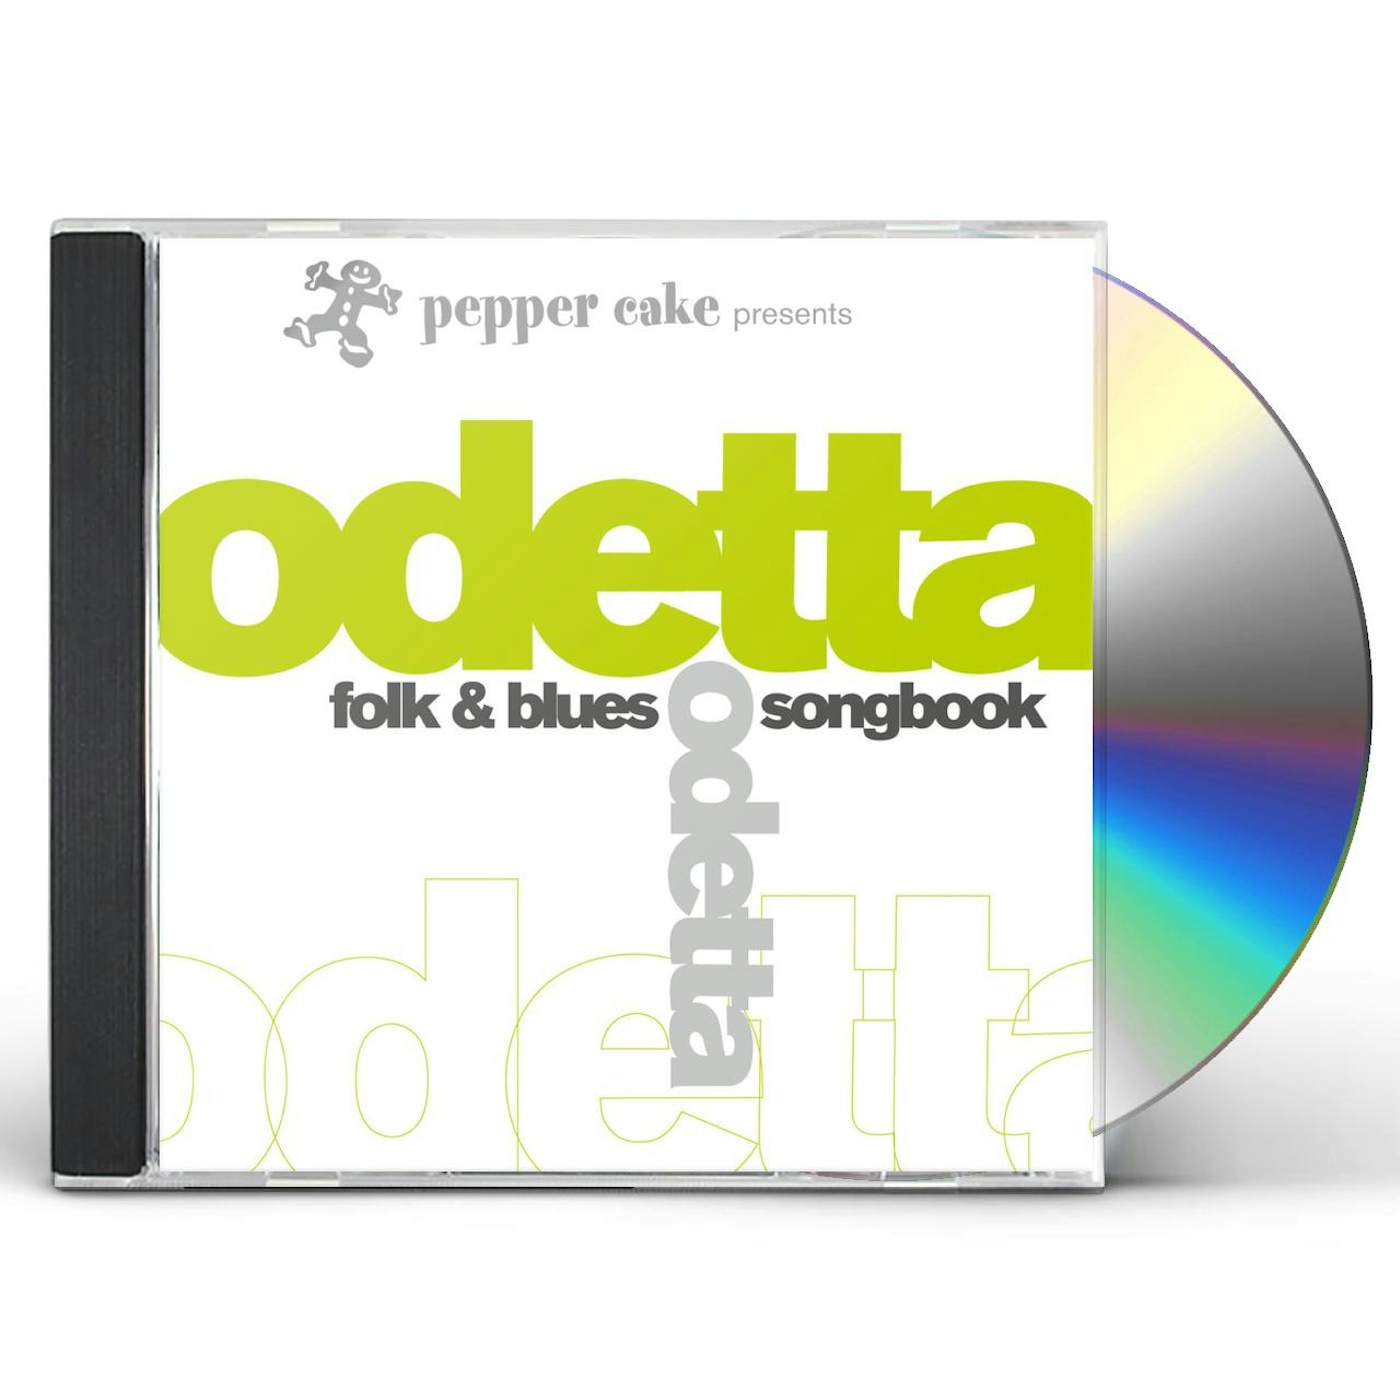 PEPPER CAKE PRESENTS ODETTA CD